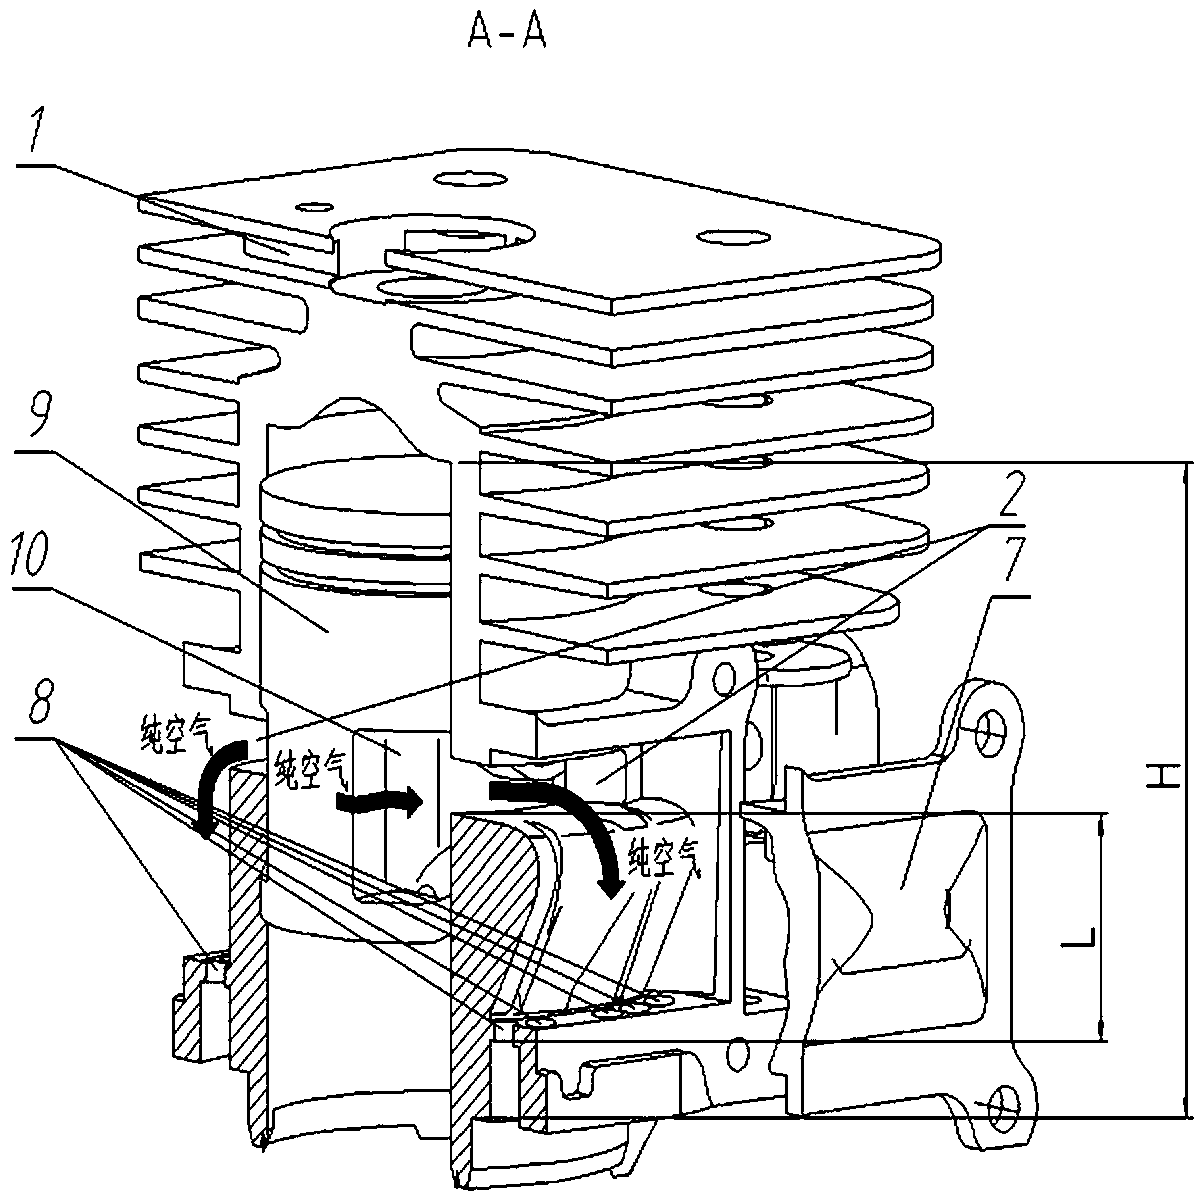 Two-stroke gasoline engine cylinder